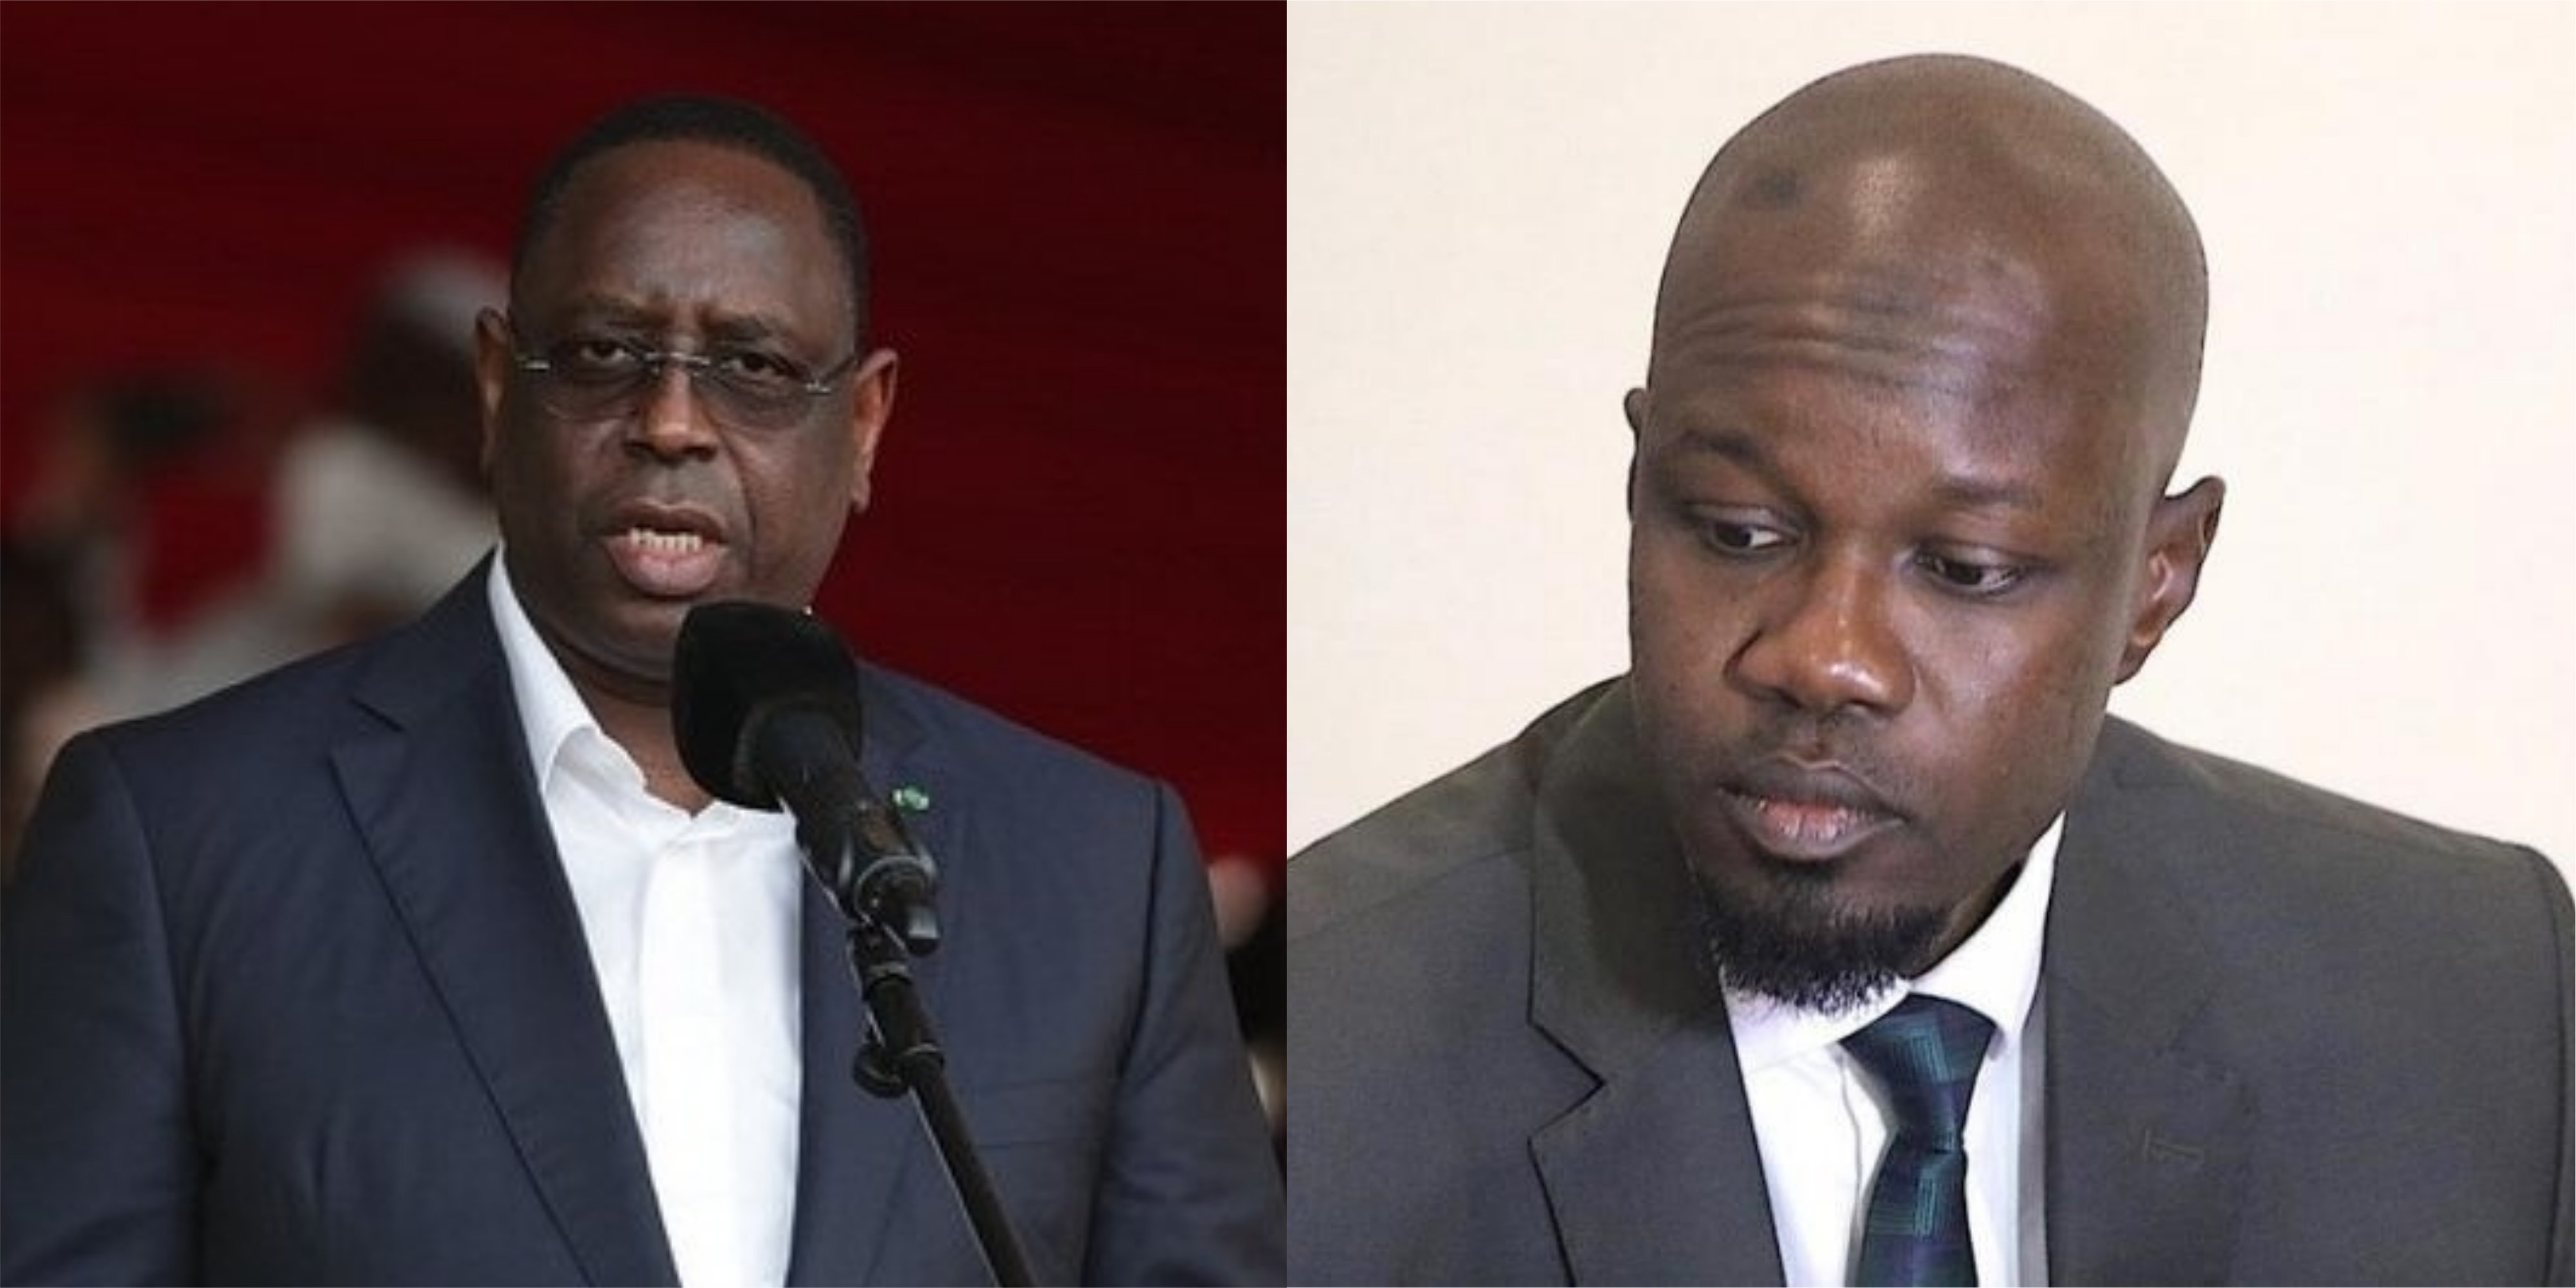 En se déclarant candidat, Ousmane Sonko approuve sans le savoir la candidature de Macky pour 2024